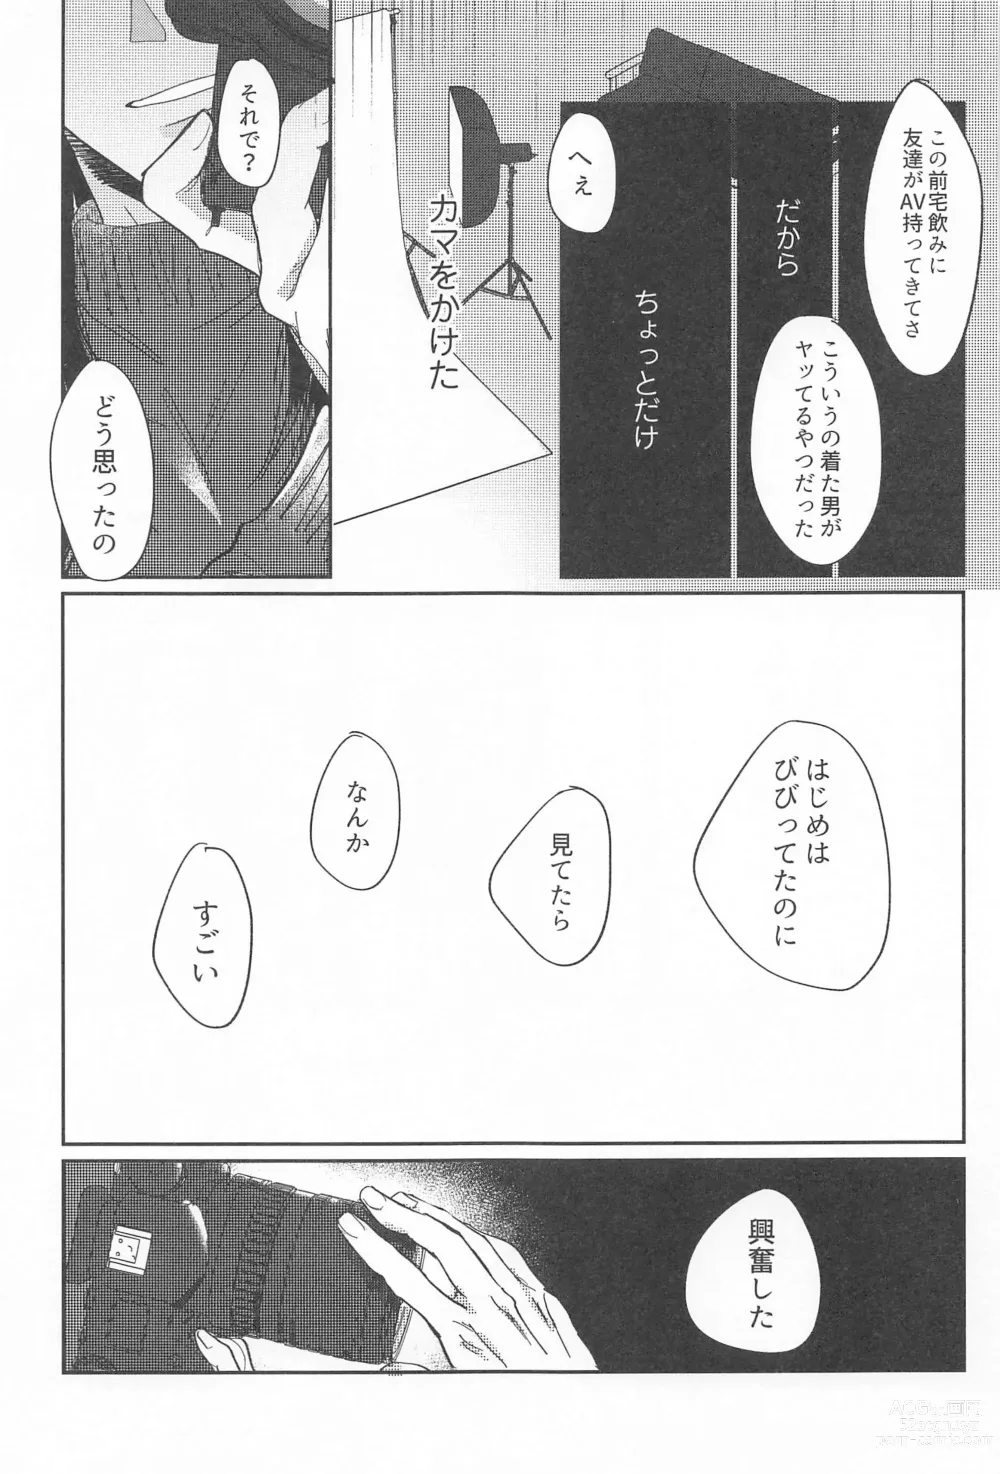 Page 28 of doujinshi Shikakukei no PENTAPRISM